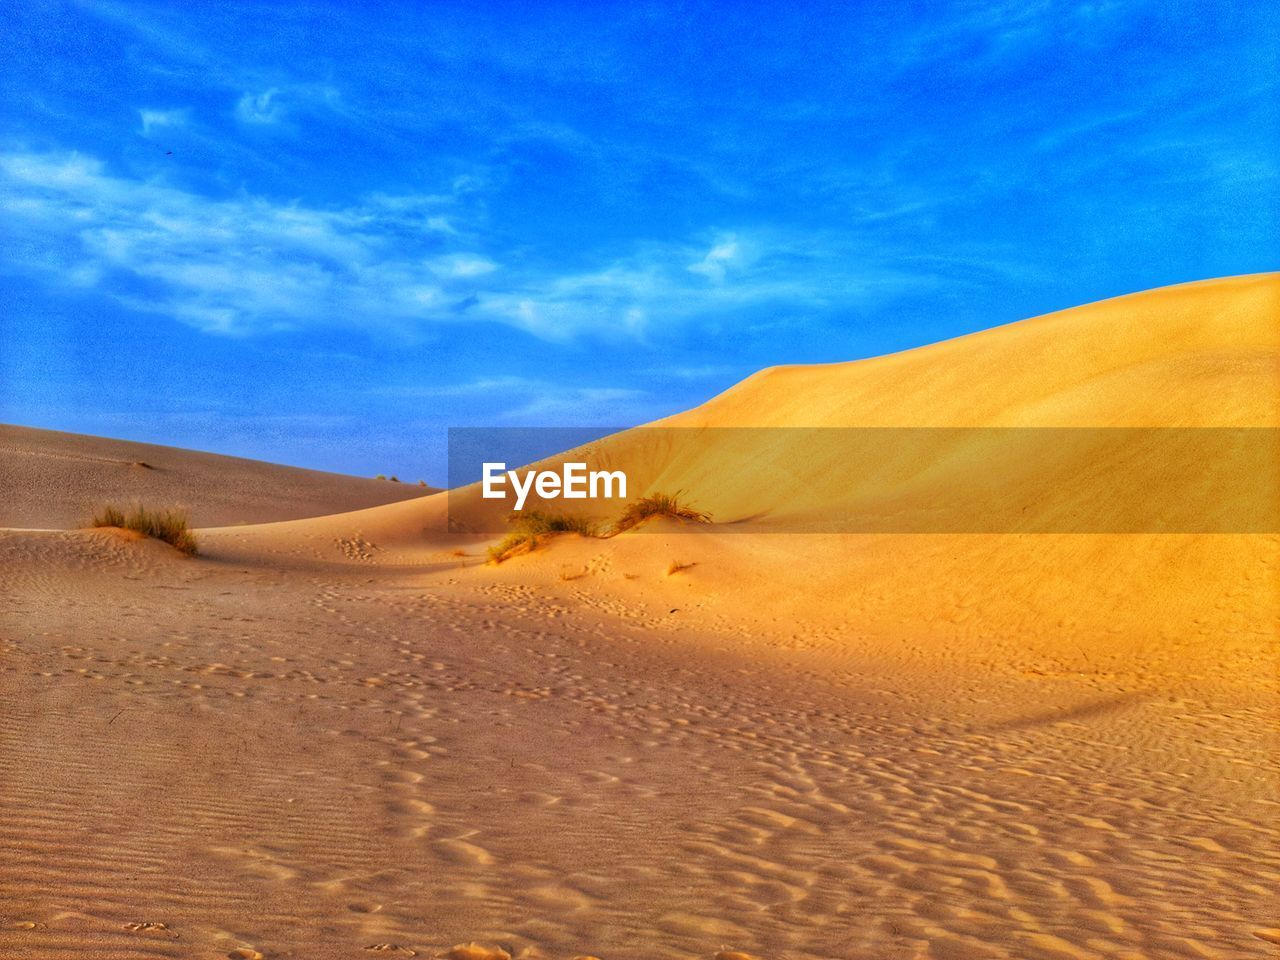 Sand dunes on desert